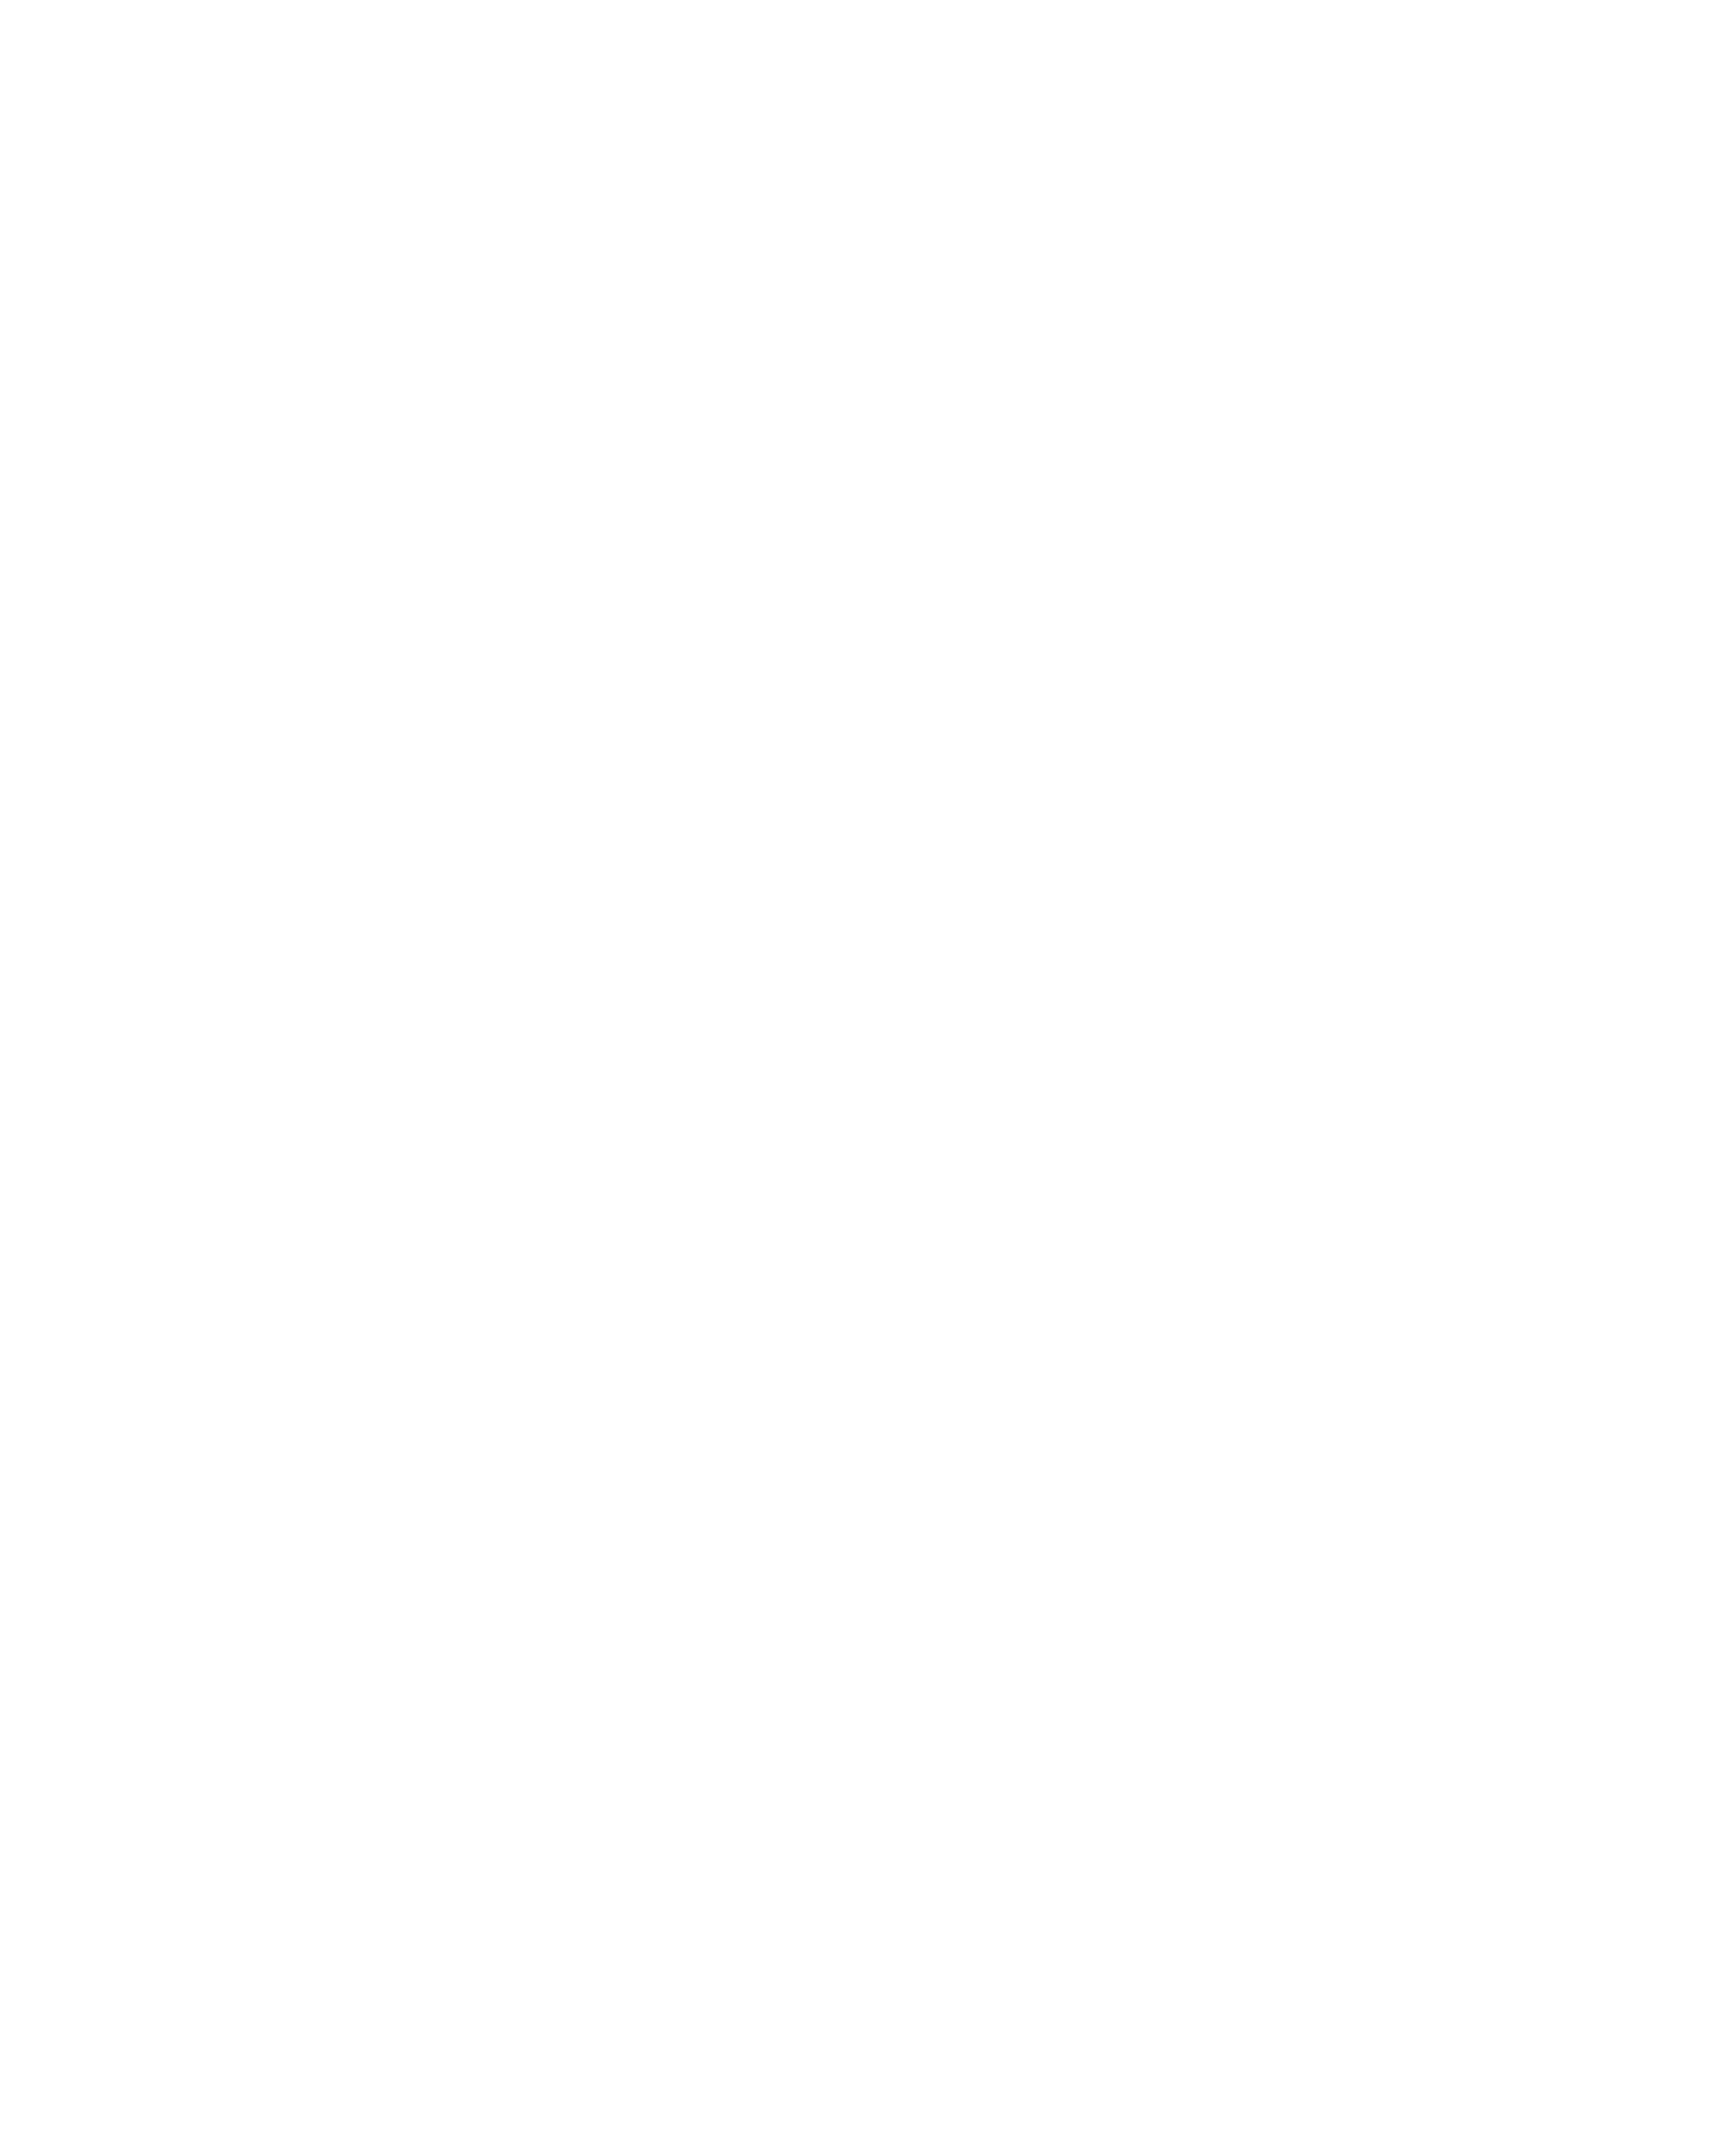 Gasam Global